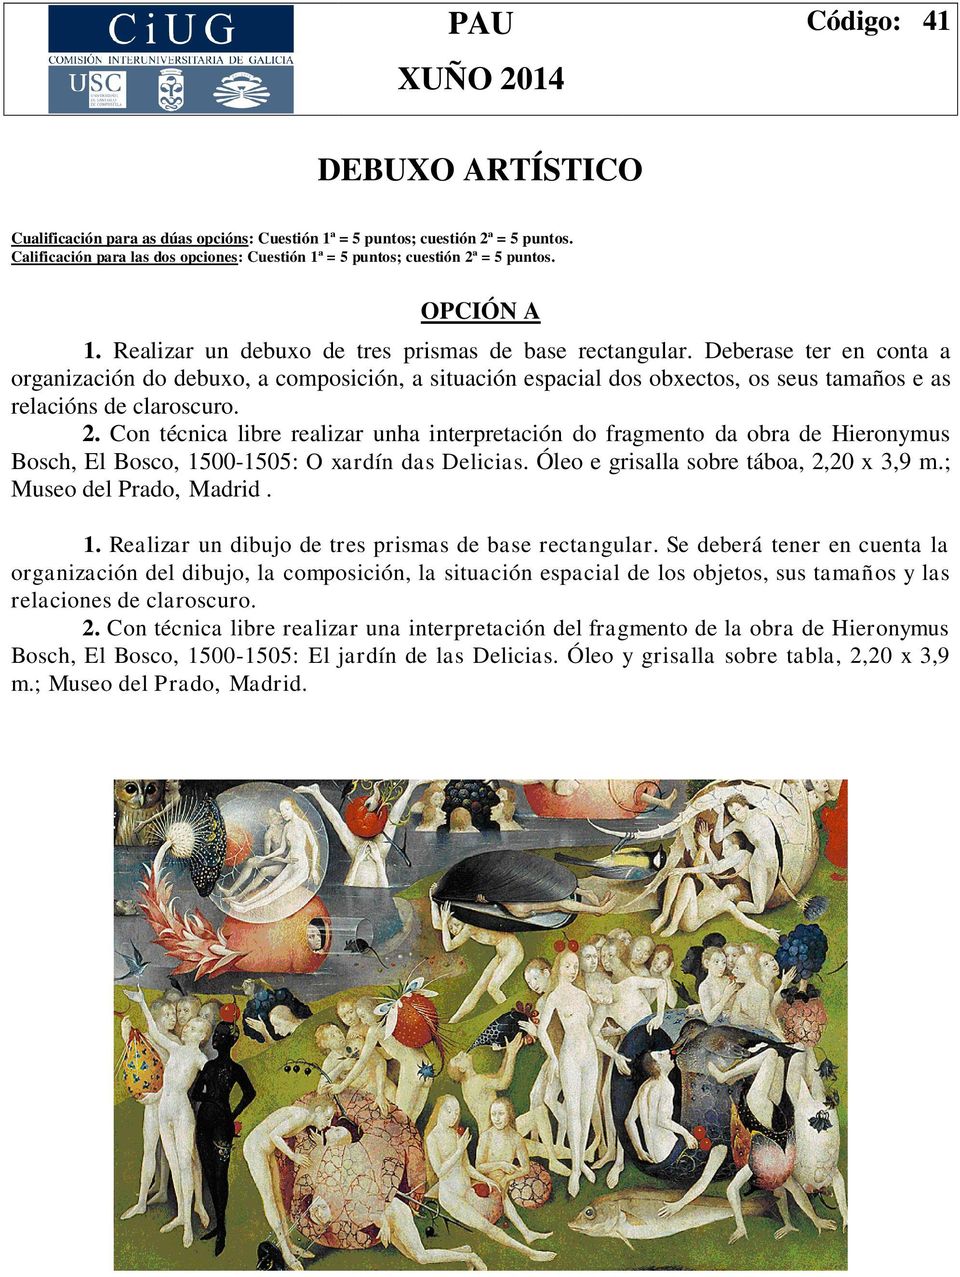 Con técnica libre realizar unha interpretación do fragmento da obra de Hieronymus Bosch, El Bosco, 1500-1505: O xardín das Delicias. Óleo e grisalla sobre táboa, 2,20 x 3,9 m.